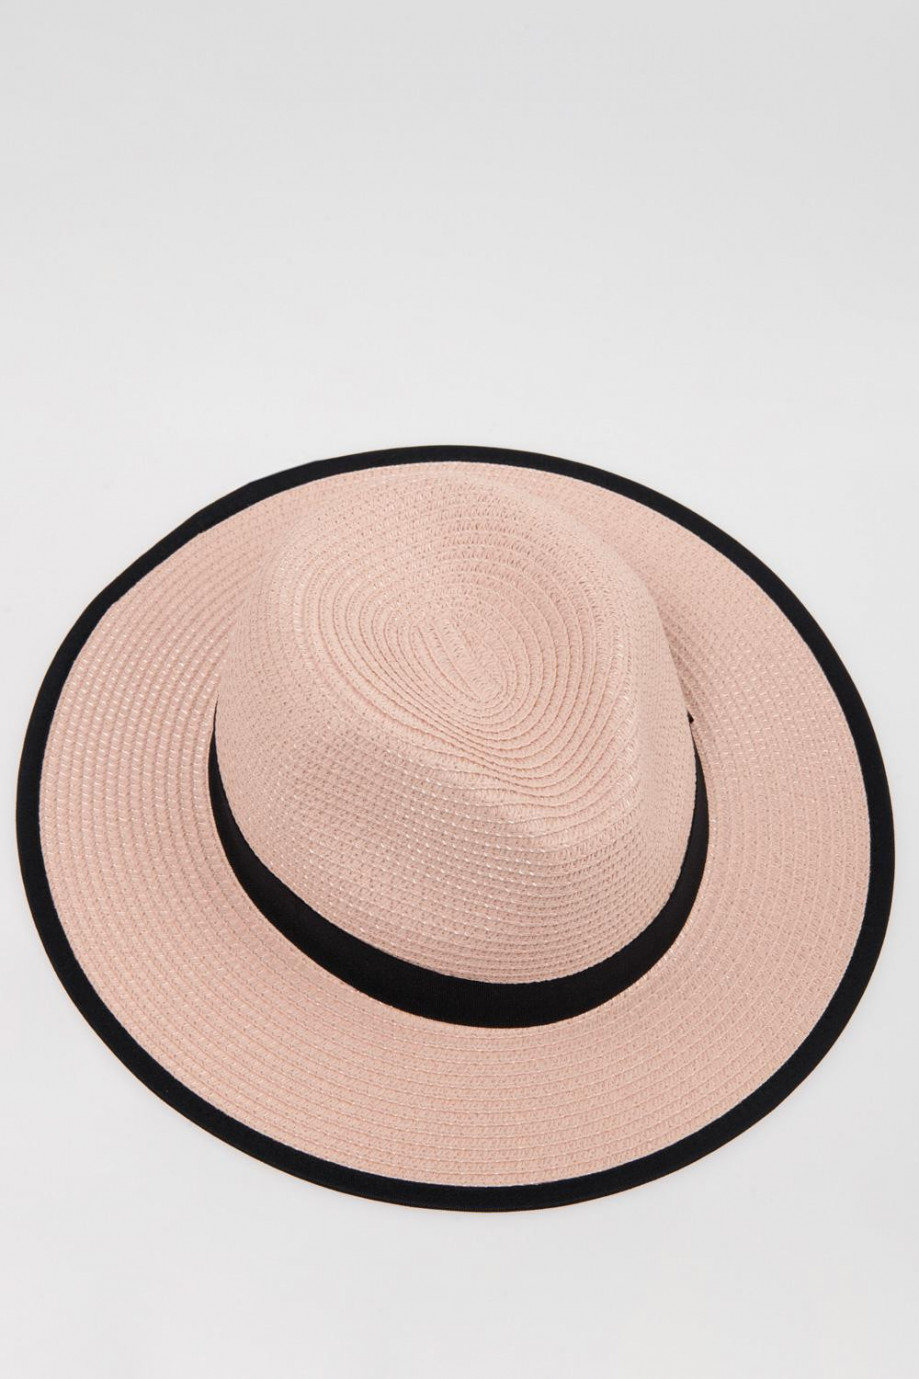 Sombrero rosado claro con borde y cinta decorativa en contraste